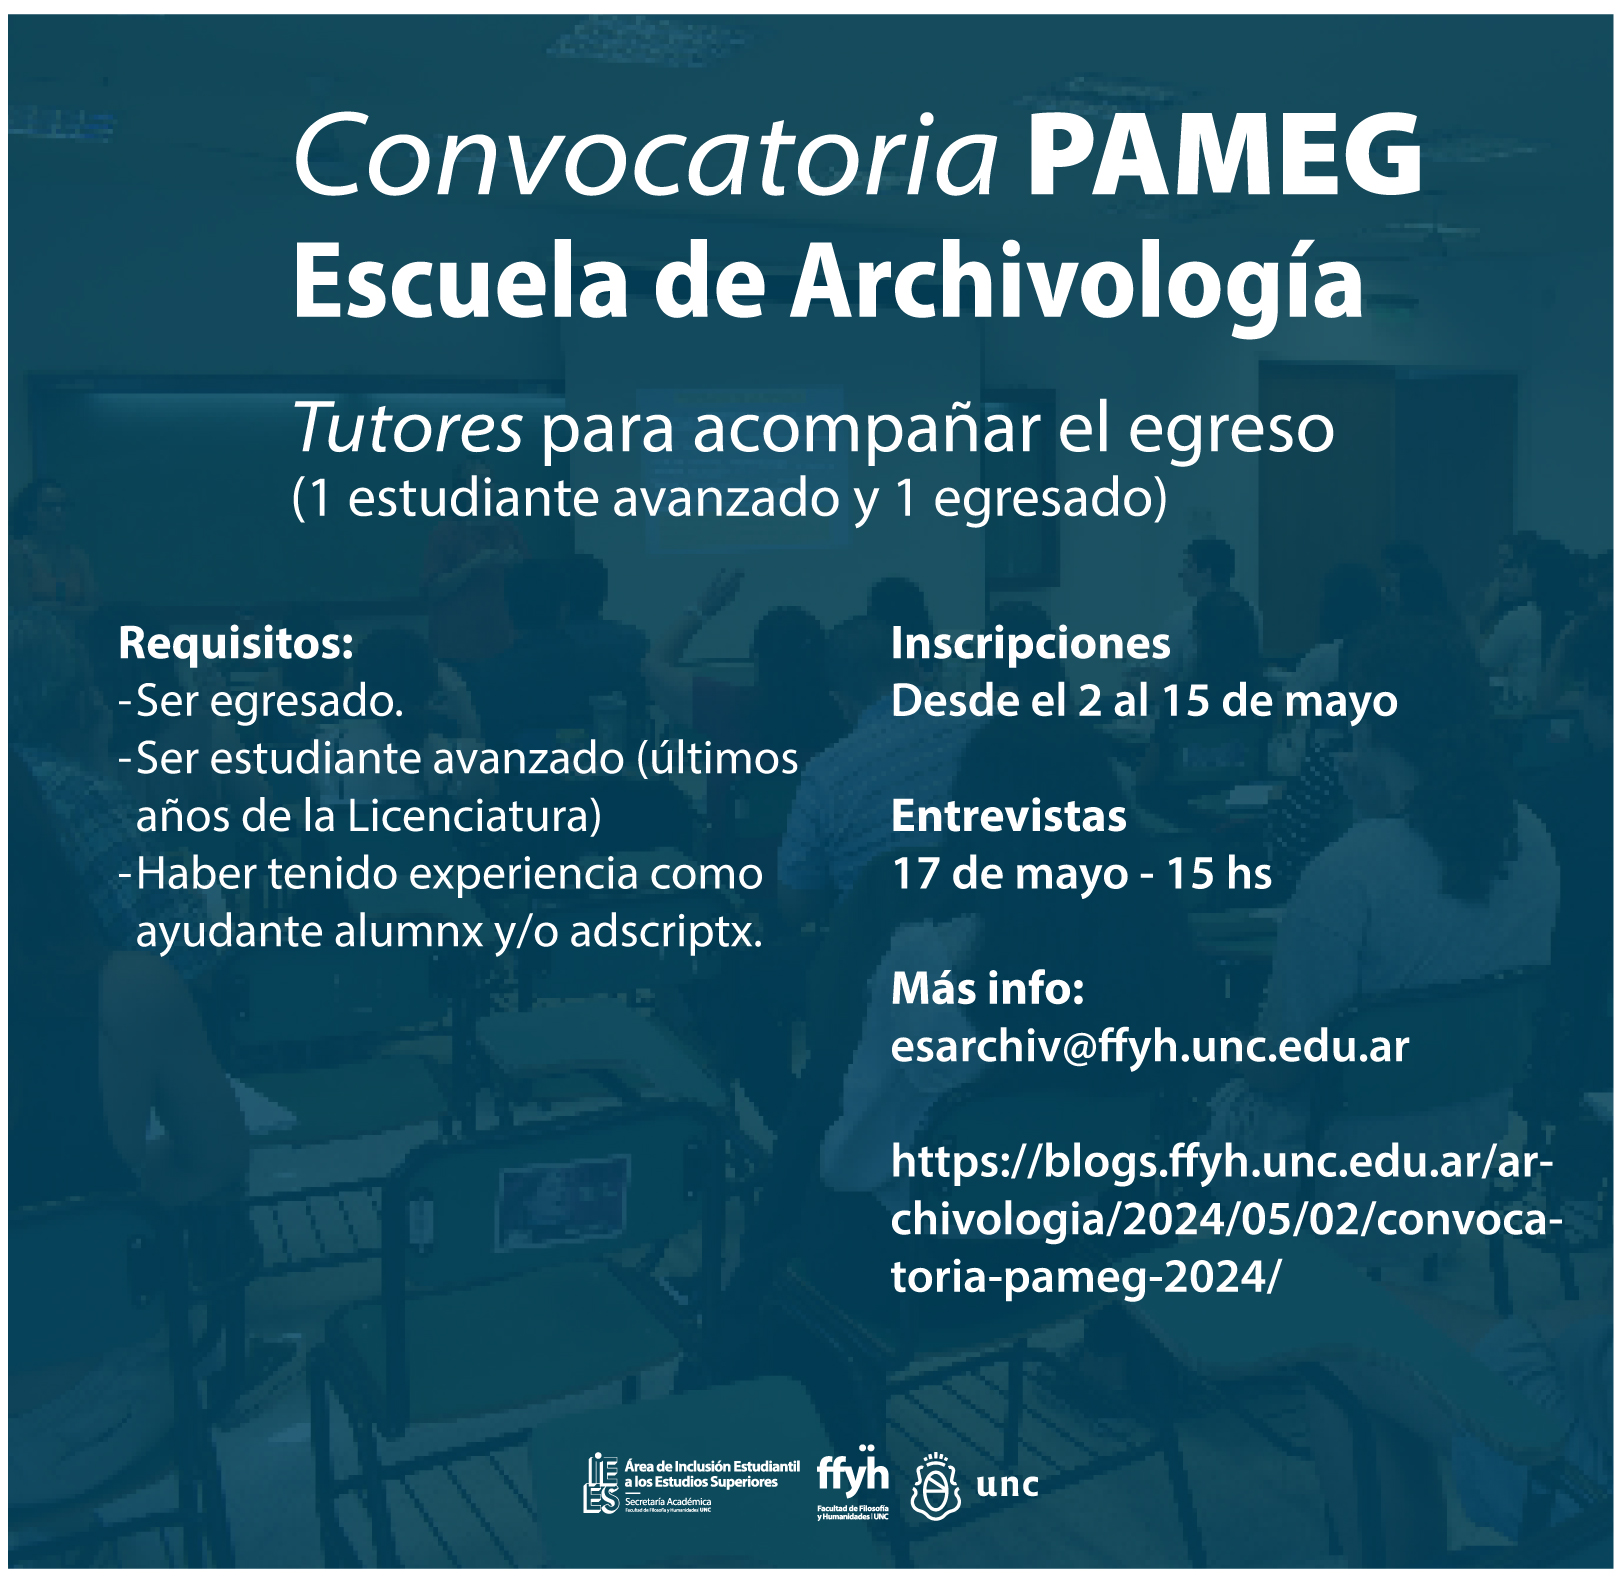 PAMEG—Archivologia